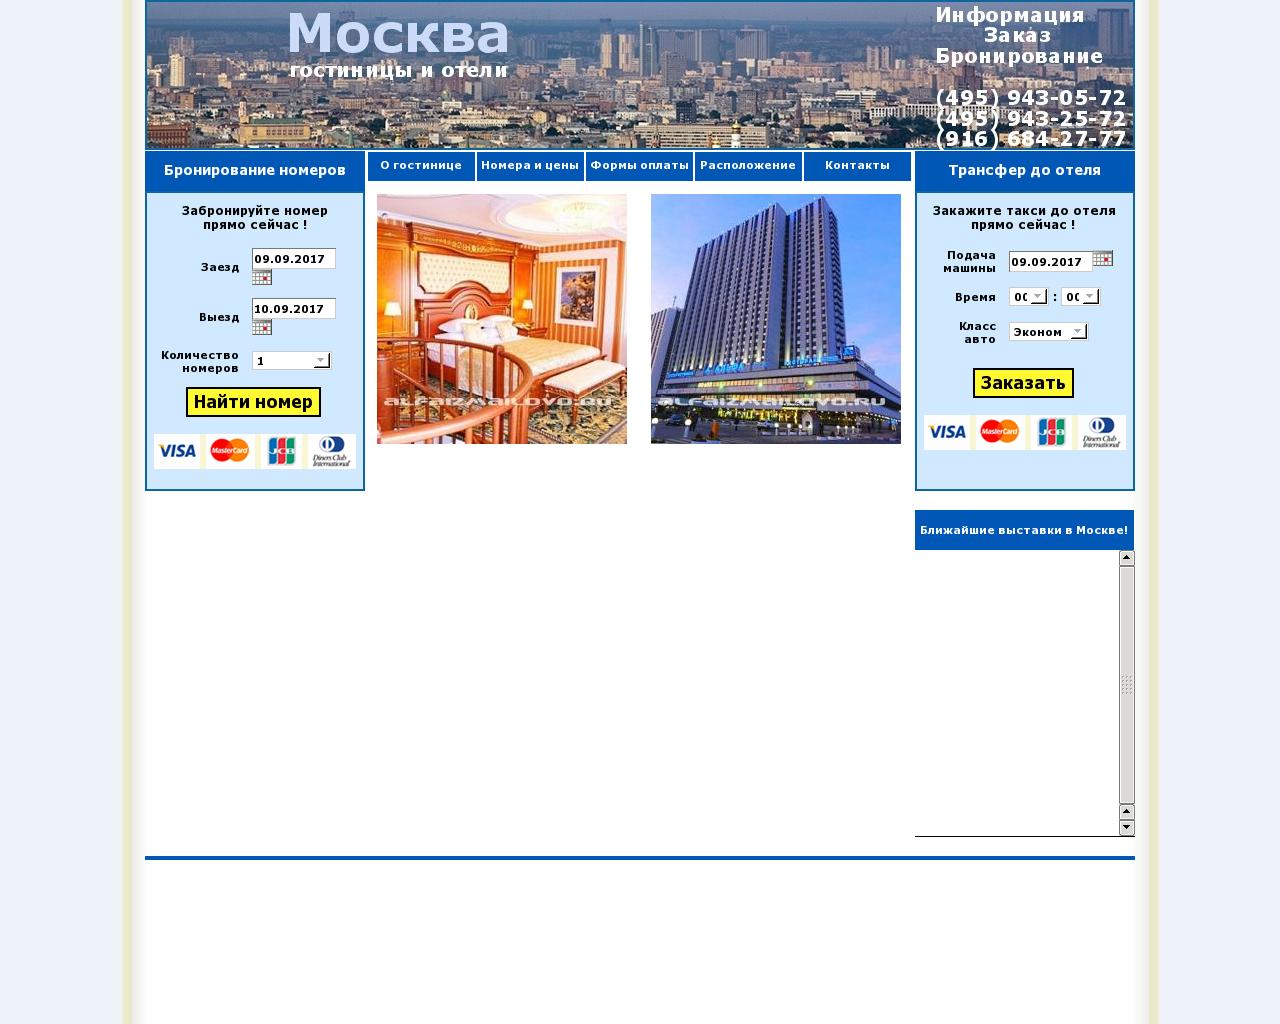 Изображение сайта hohotel.ru в разрешении 1280x1024